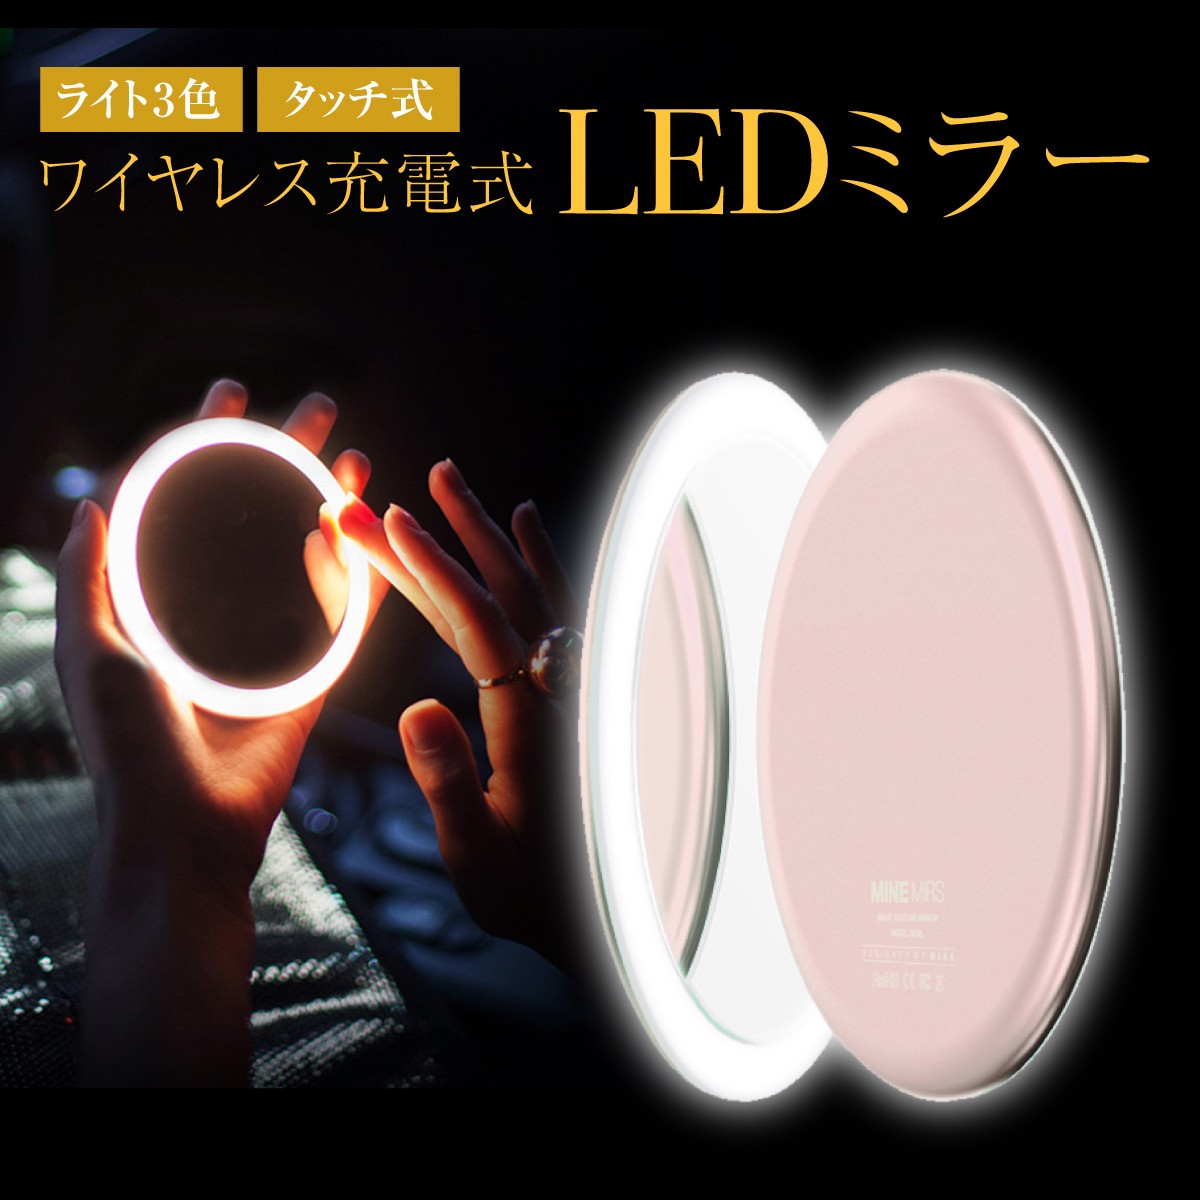 LED コンパクトミラー 女優ミラー ミニ 手鏡 メイクミラー ライト